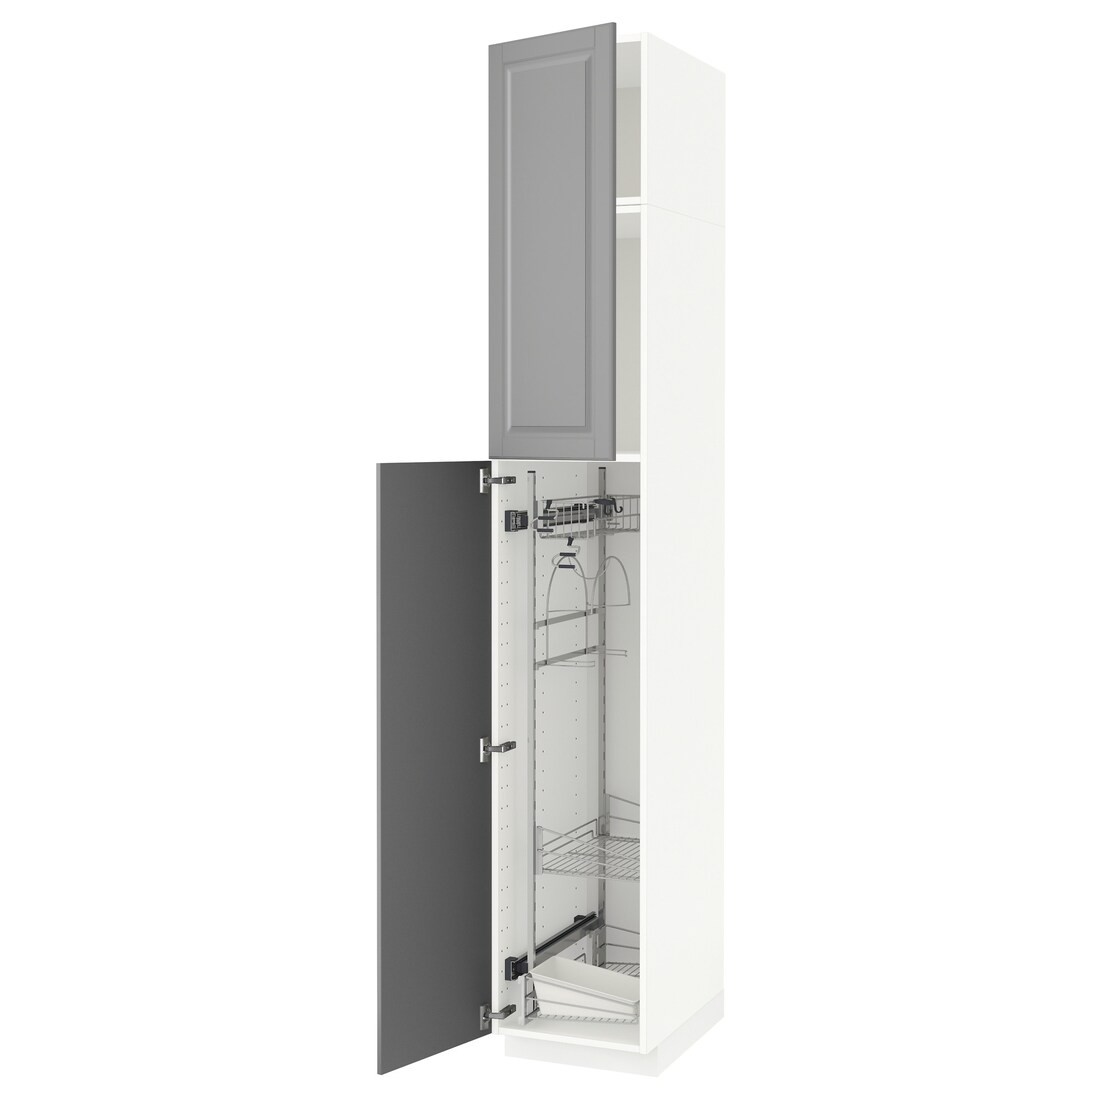 METOD МЕТОД Высокий шкаф с отделением для аксессуаров для уборки, белый / Bodbyn серый, 40x60x240 см